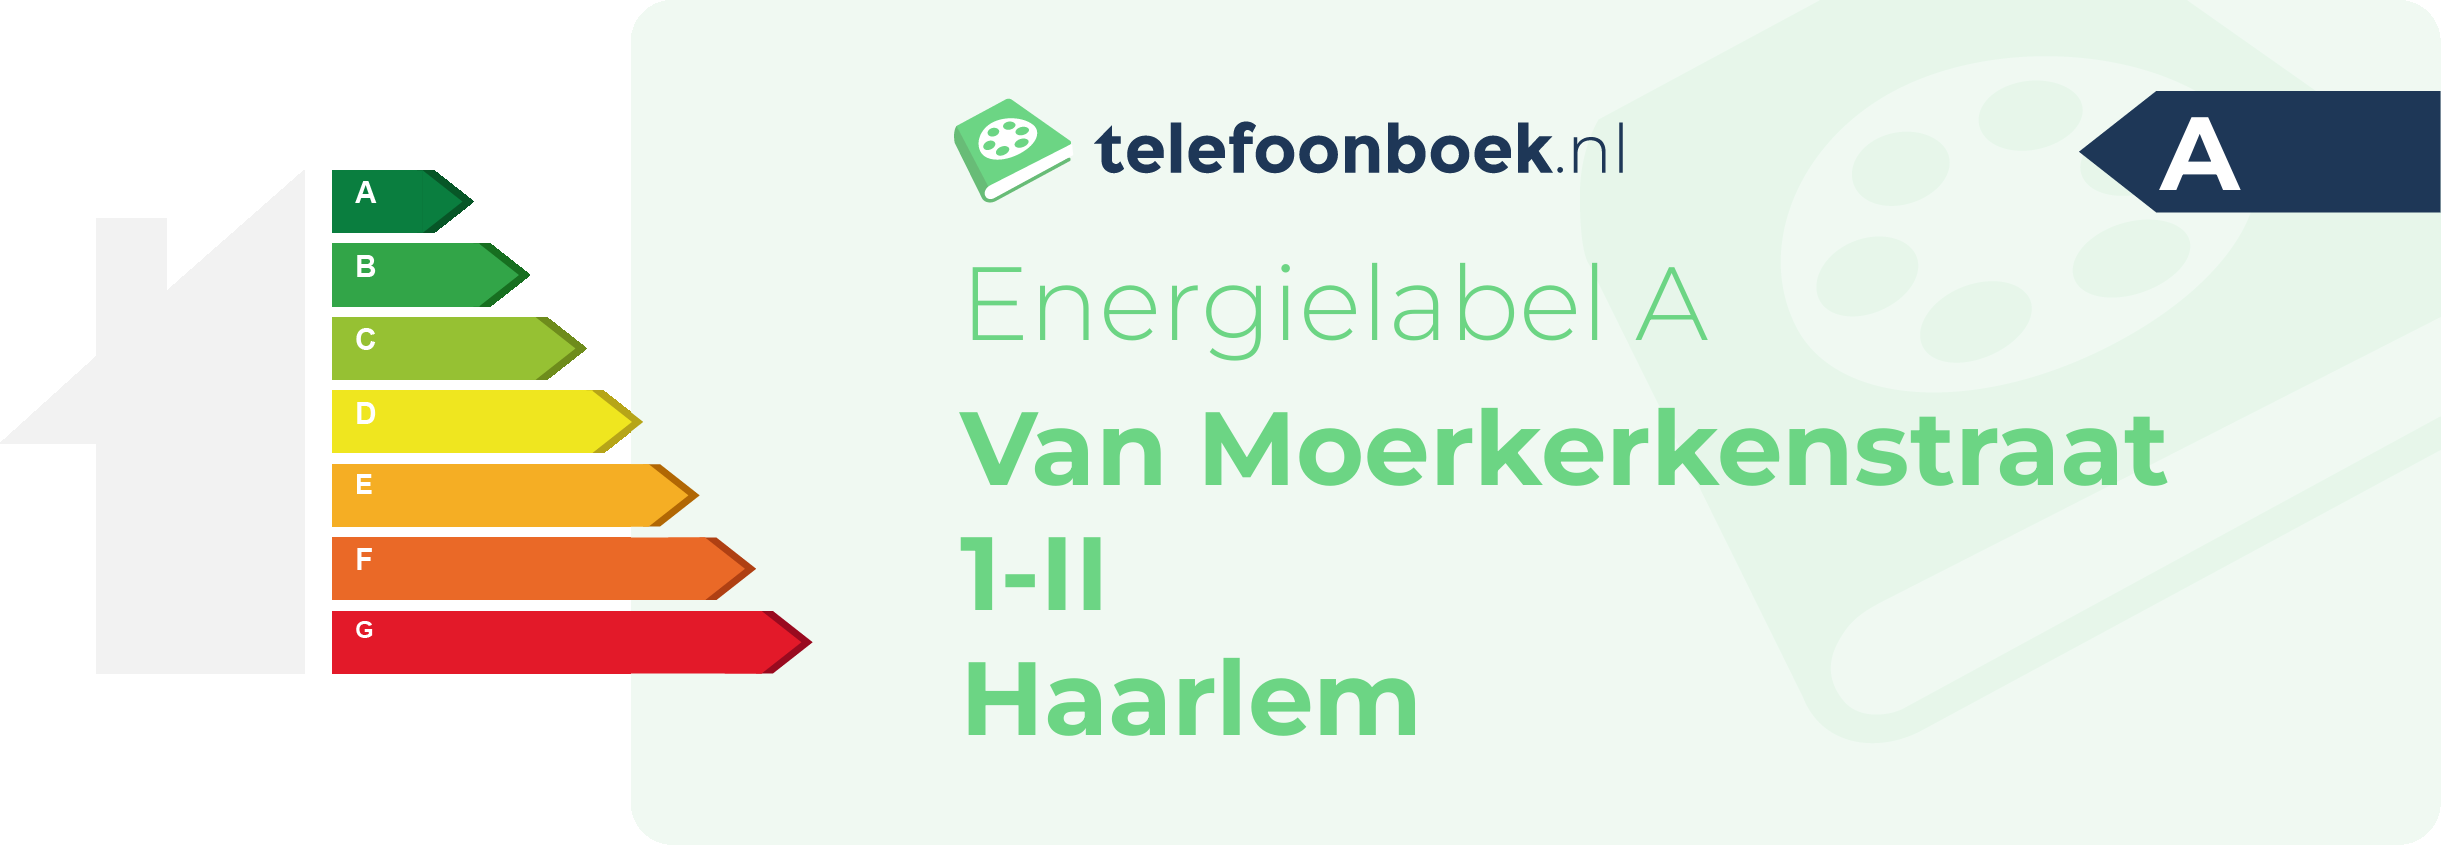 Energielabel Van Moerkerkenstraat 1-II Haarlem